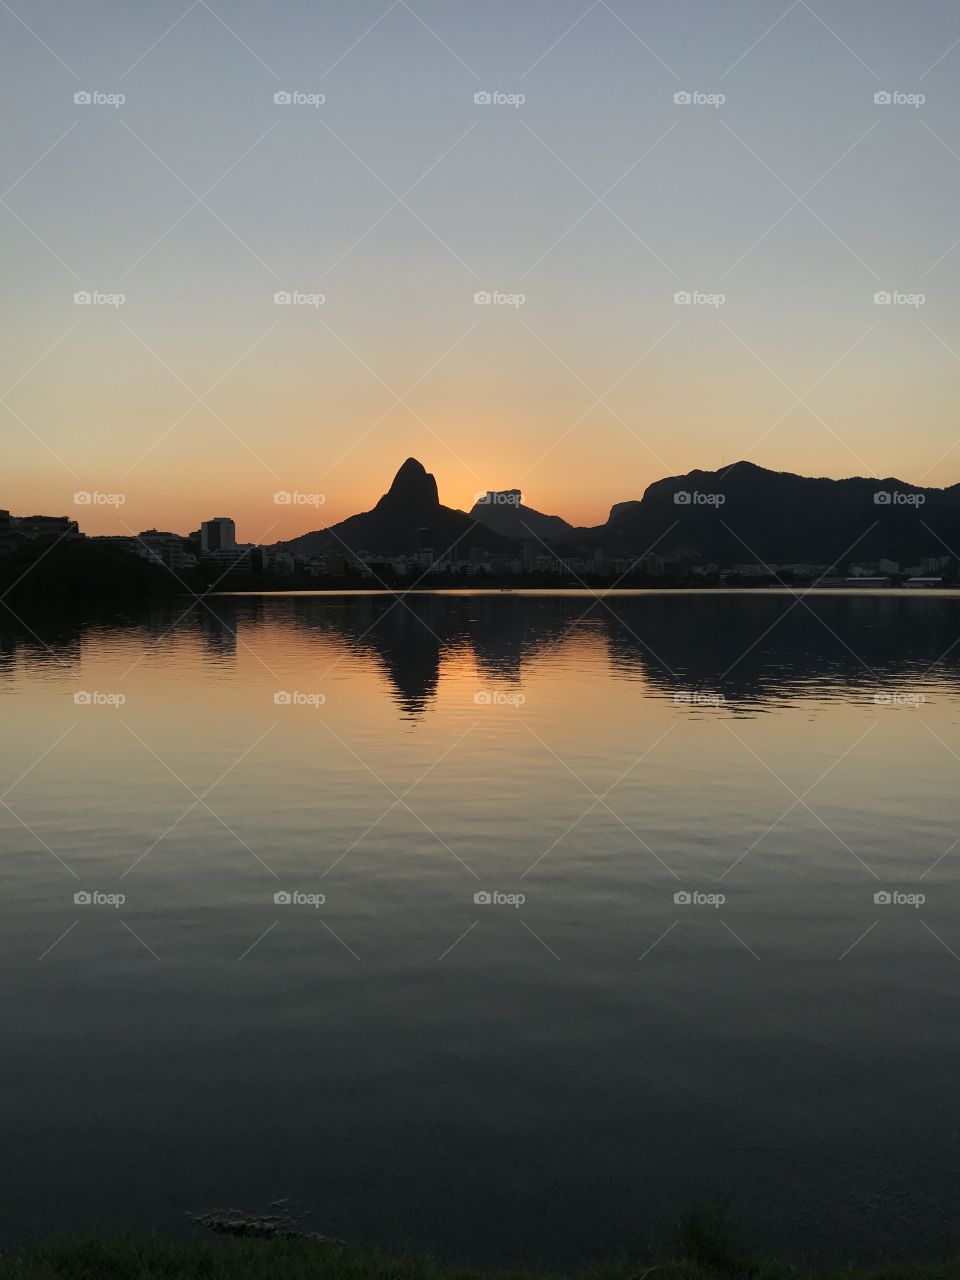 It’s look like a mirror, but it’s just the reflection of the mountains in the Rodrigo de Freitas lagoon. Incredible sunset. Lagoa Rodrigo de Freitas, Rio de Janeiro, Brazil.